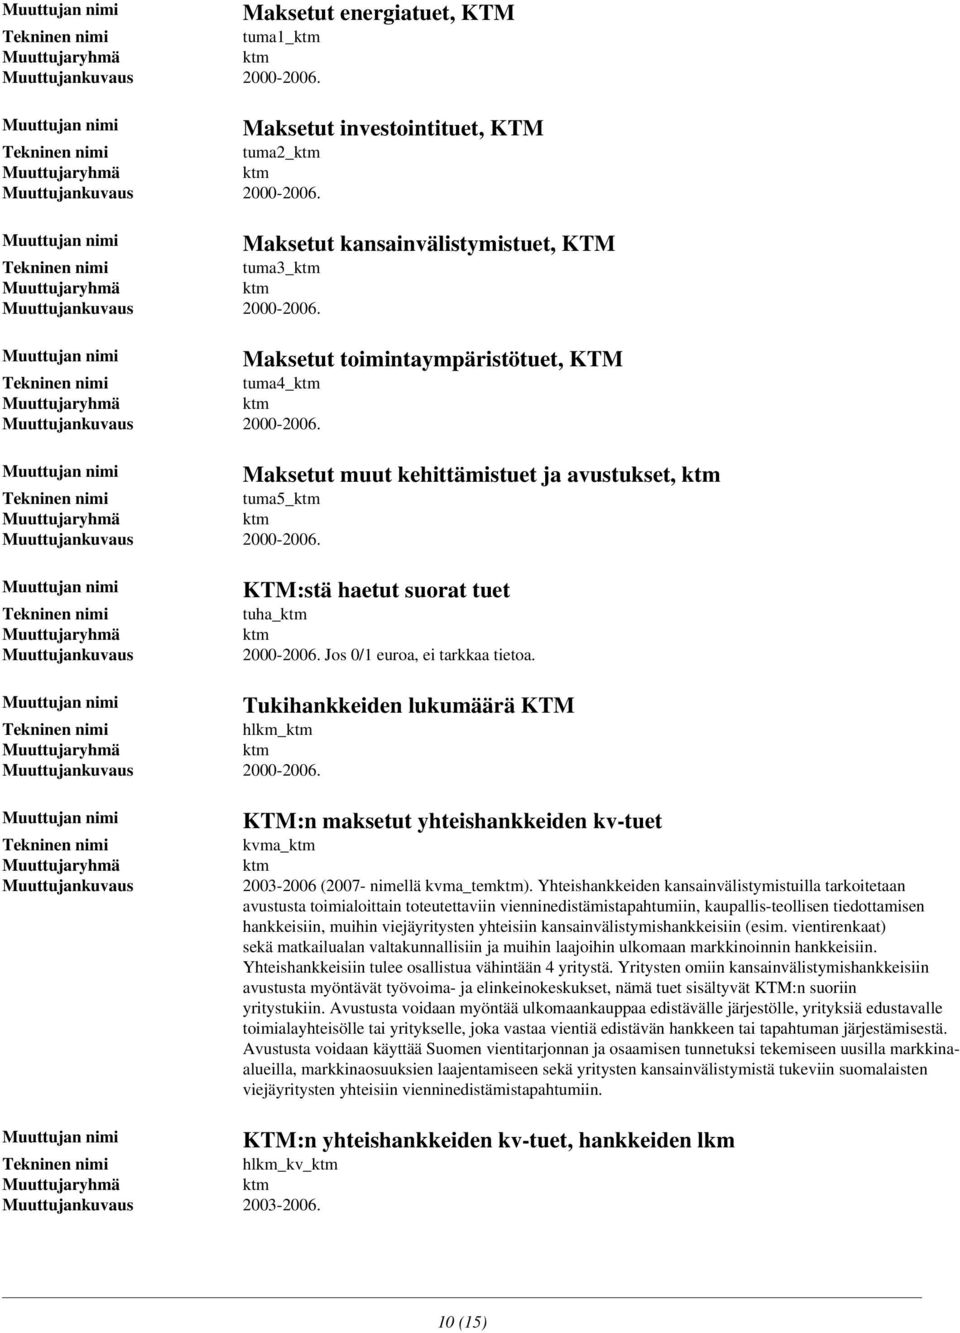 tuha_ 2000-2006. Jos 0/1 euroa, ei tarkkaa tietoa. hlkm_ 2000-2006. Tukihankkeiden lukumäärä KTM KTM:n maksetut yhteishankkeiden kv-tuet kvma_ 2003-2006 (2007- nimellä kvma_).